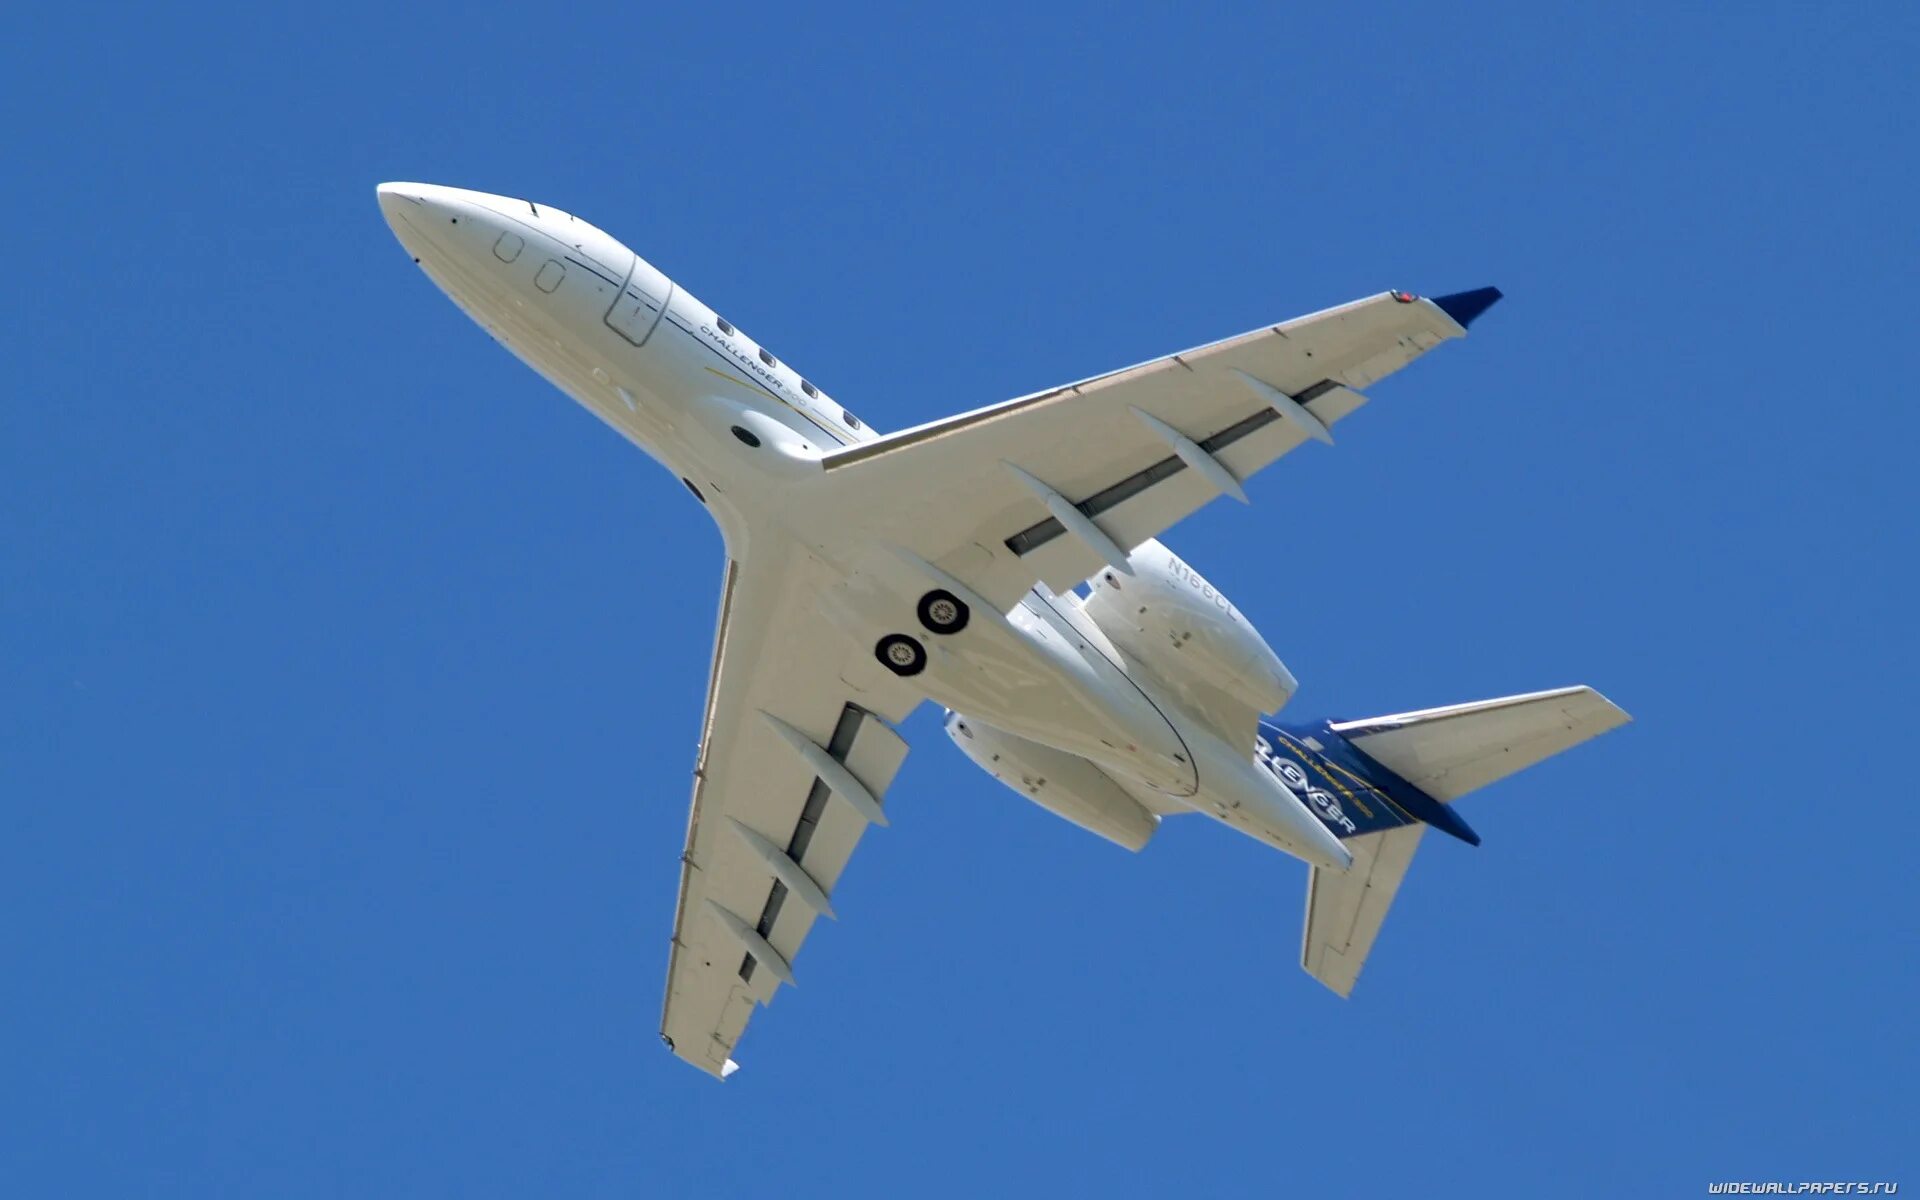 Самолет снизу. Самолет вид снизу. Пассажирский самолет вид снизу. Симметричный самолет. Самолет симметрия.